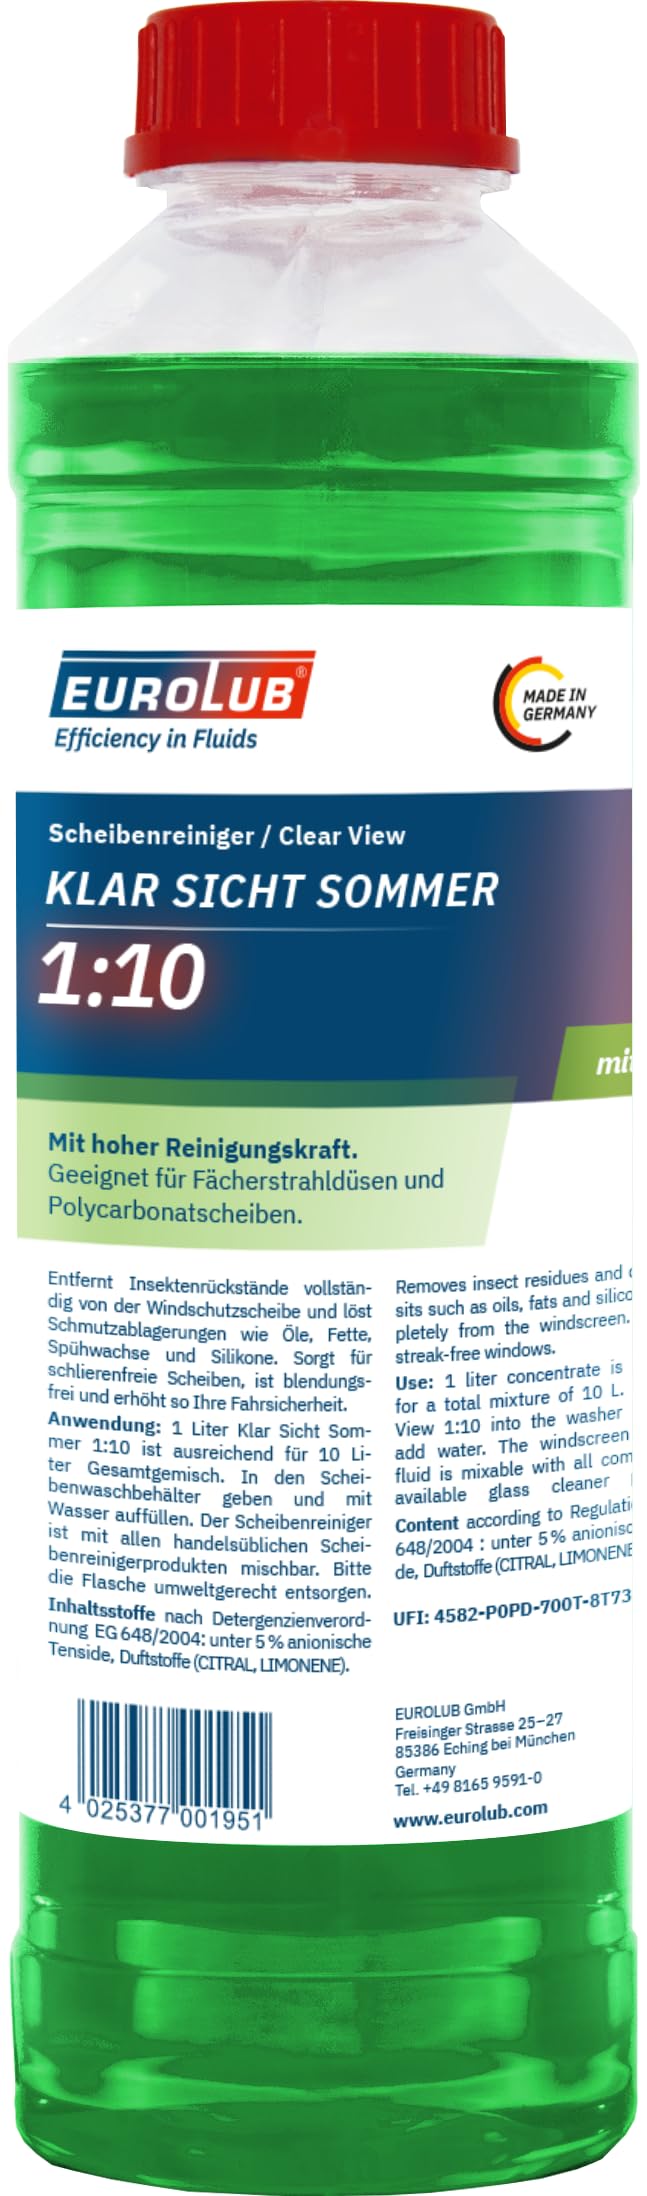 EUROLUB KLAR SICHT Sommer 1:10 Scheibenreiniger-Konzentrat, 1 Liter von EUROLUB